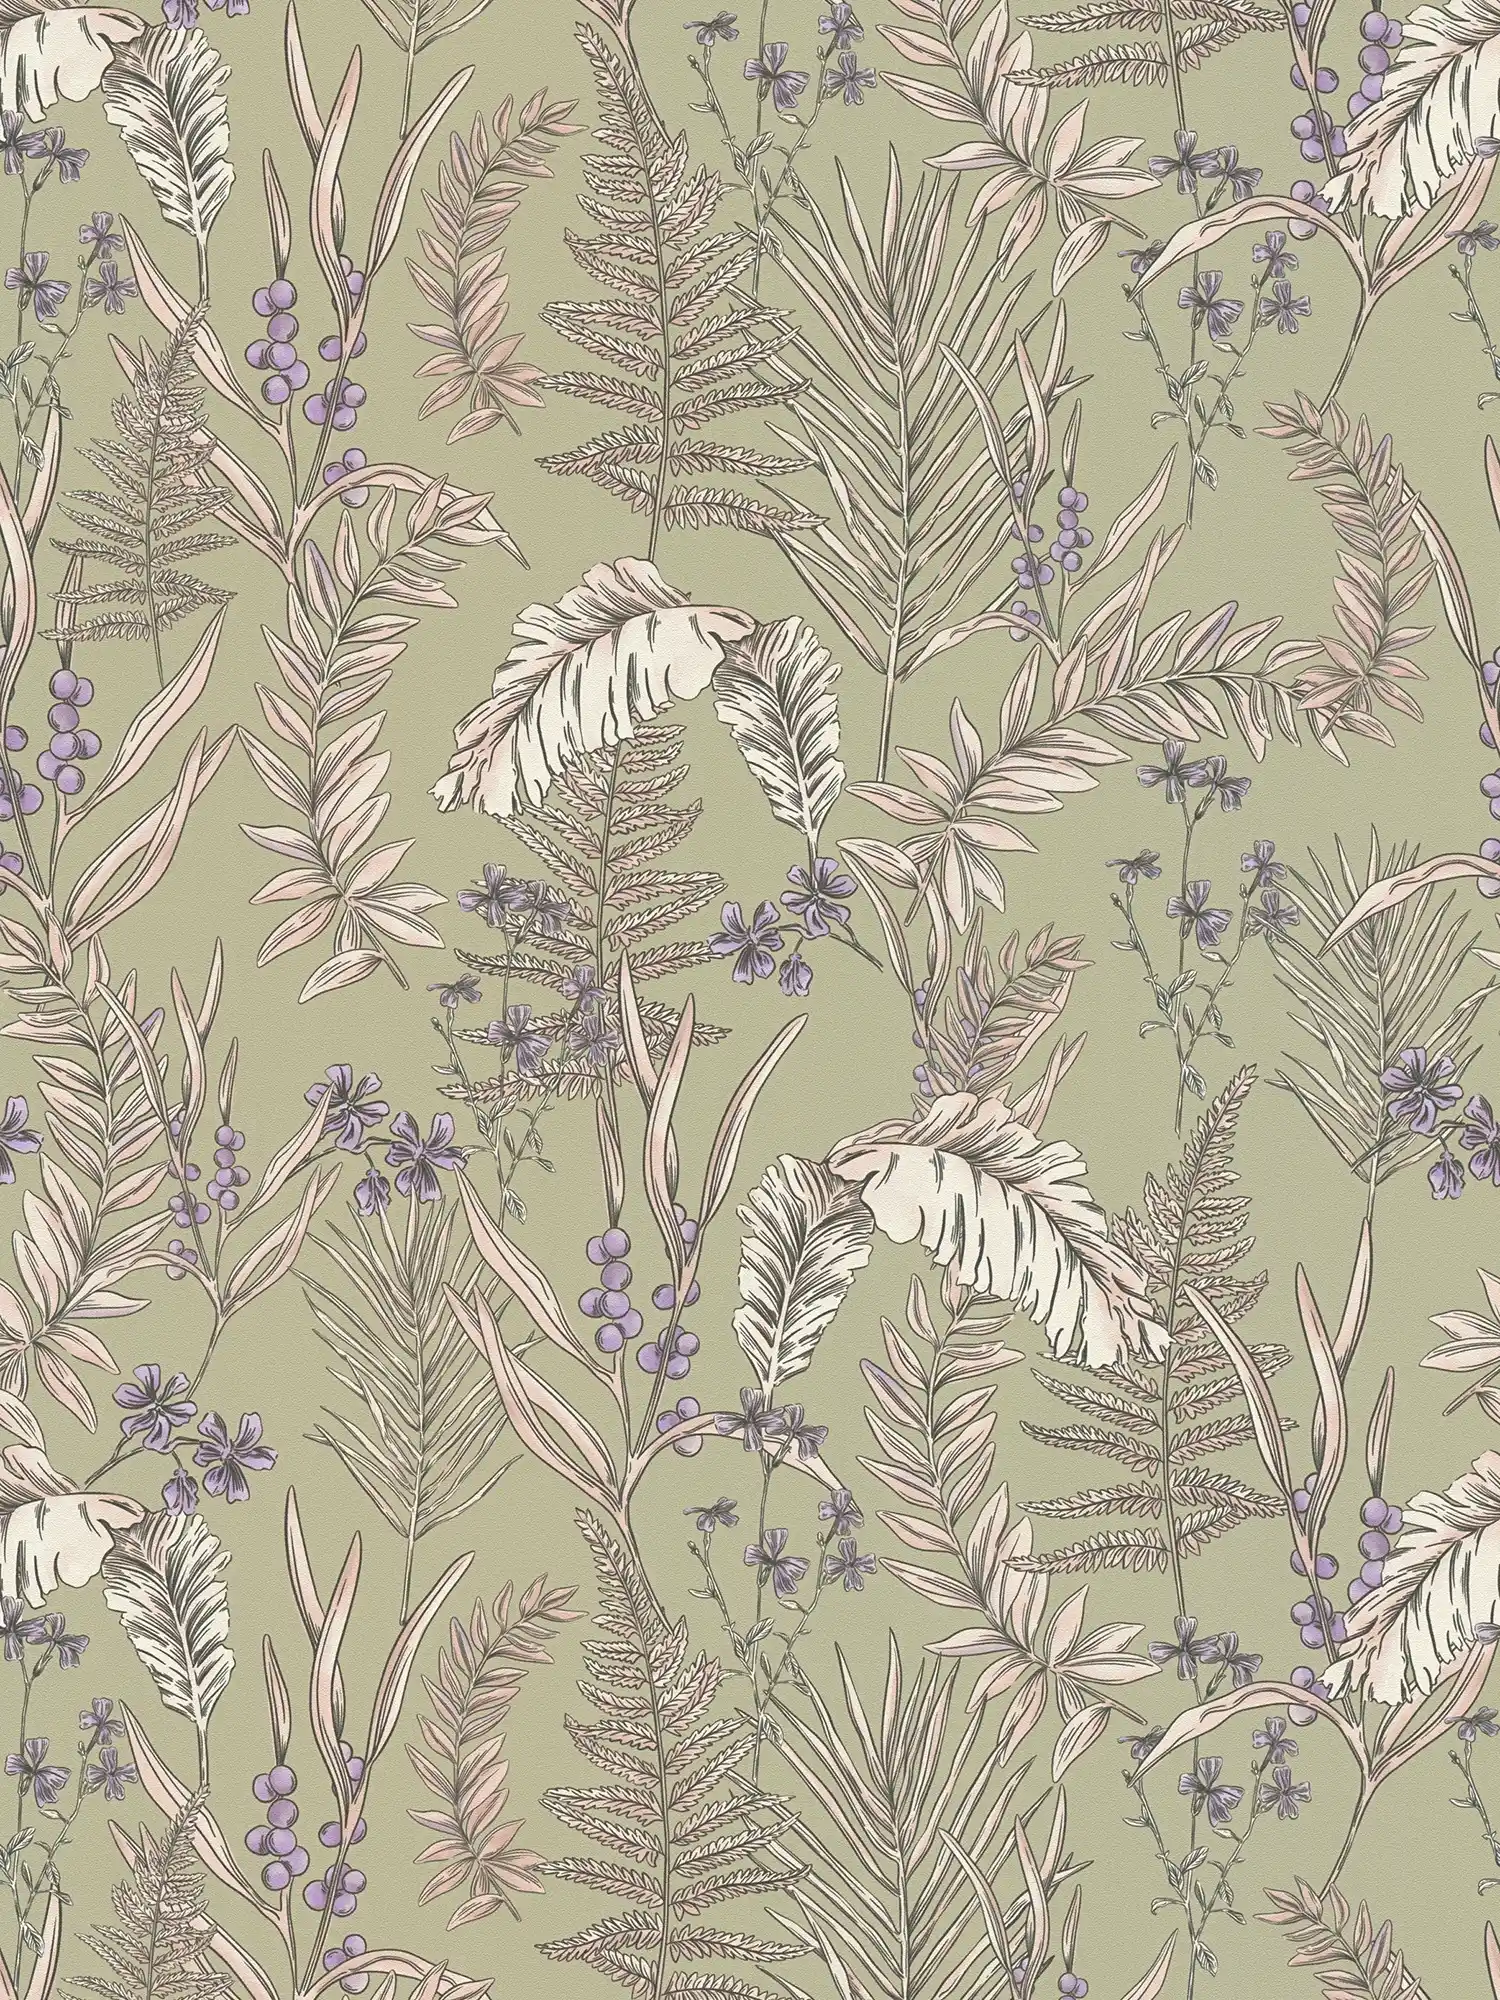 papier peint en papier moderne style floral structuré avec des feuilles et des fleurs - gris, crème, violet
